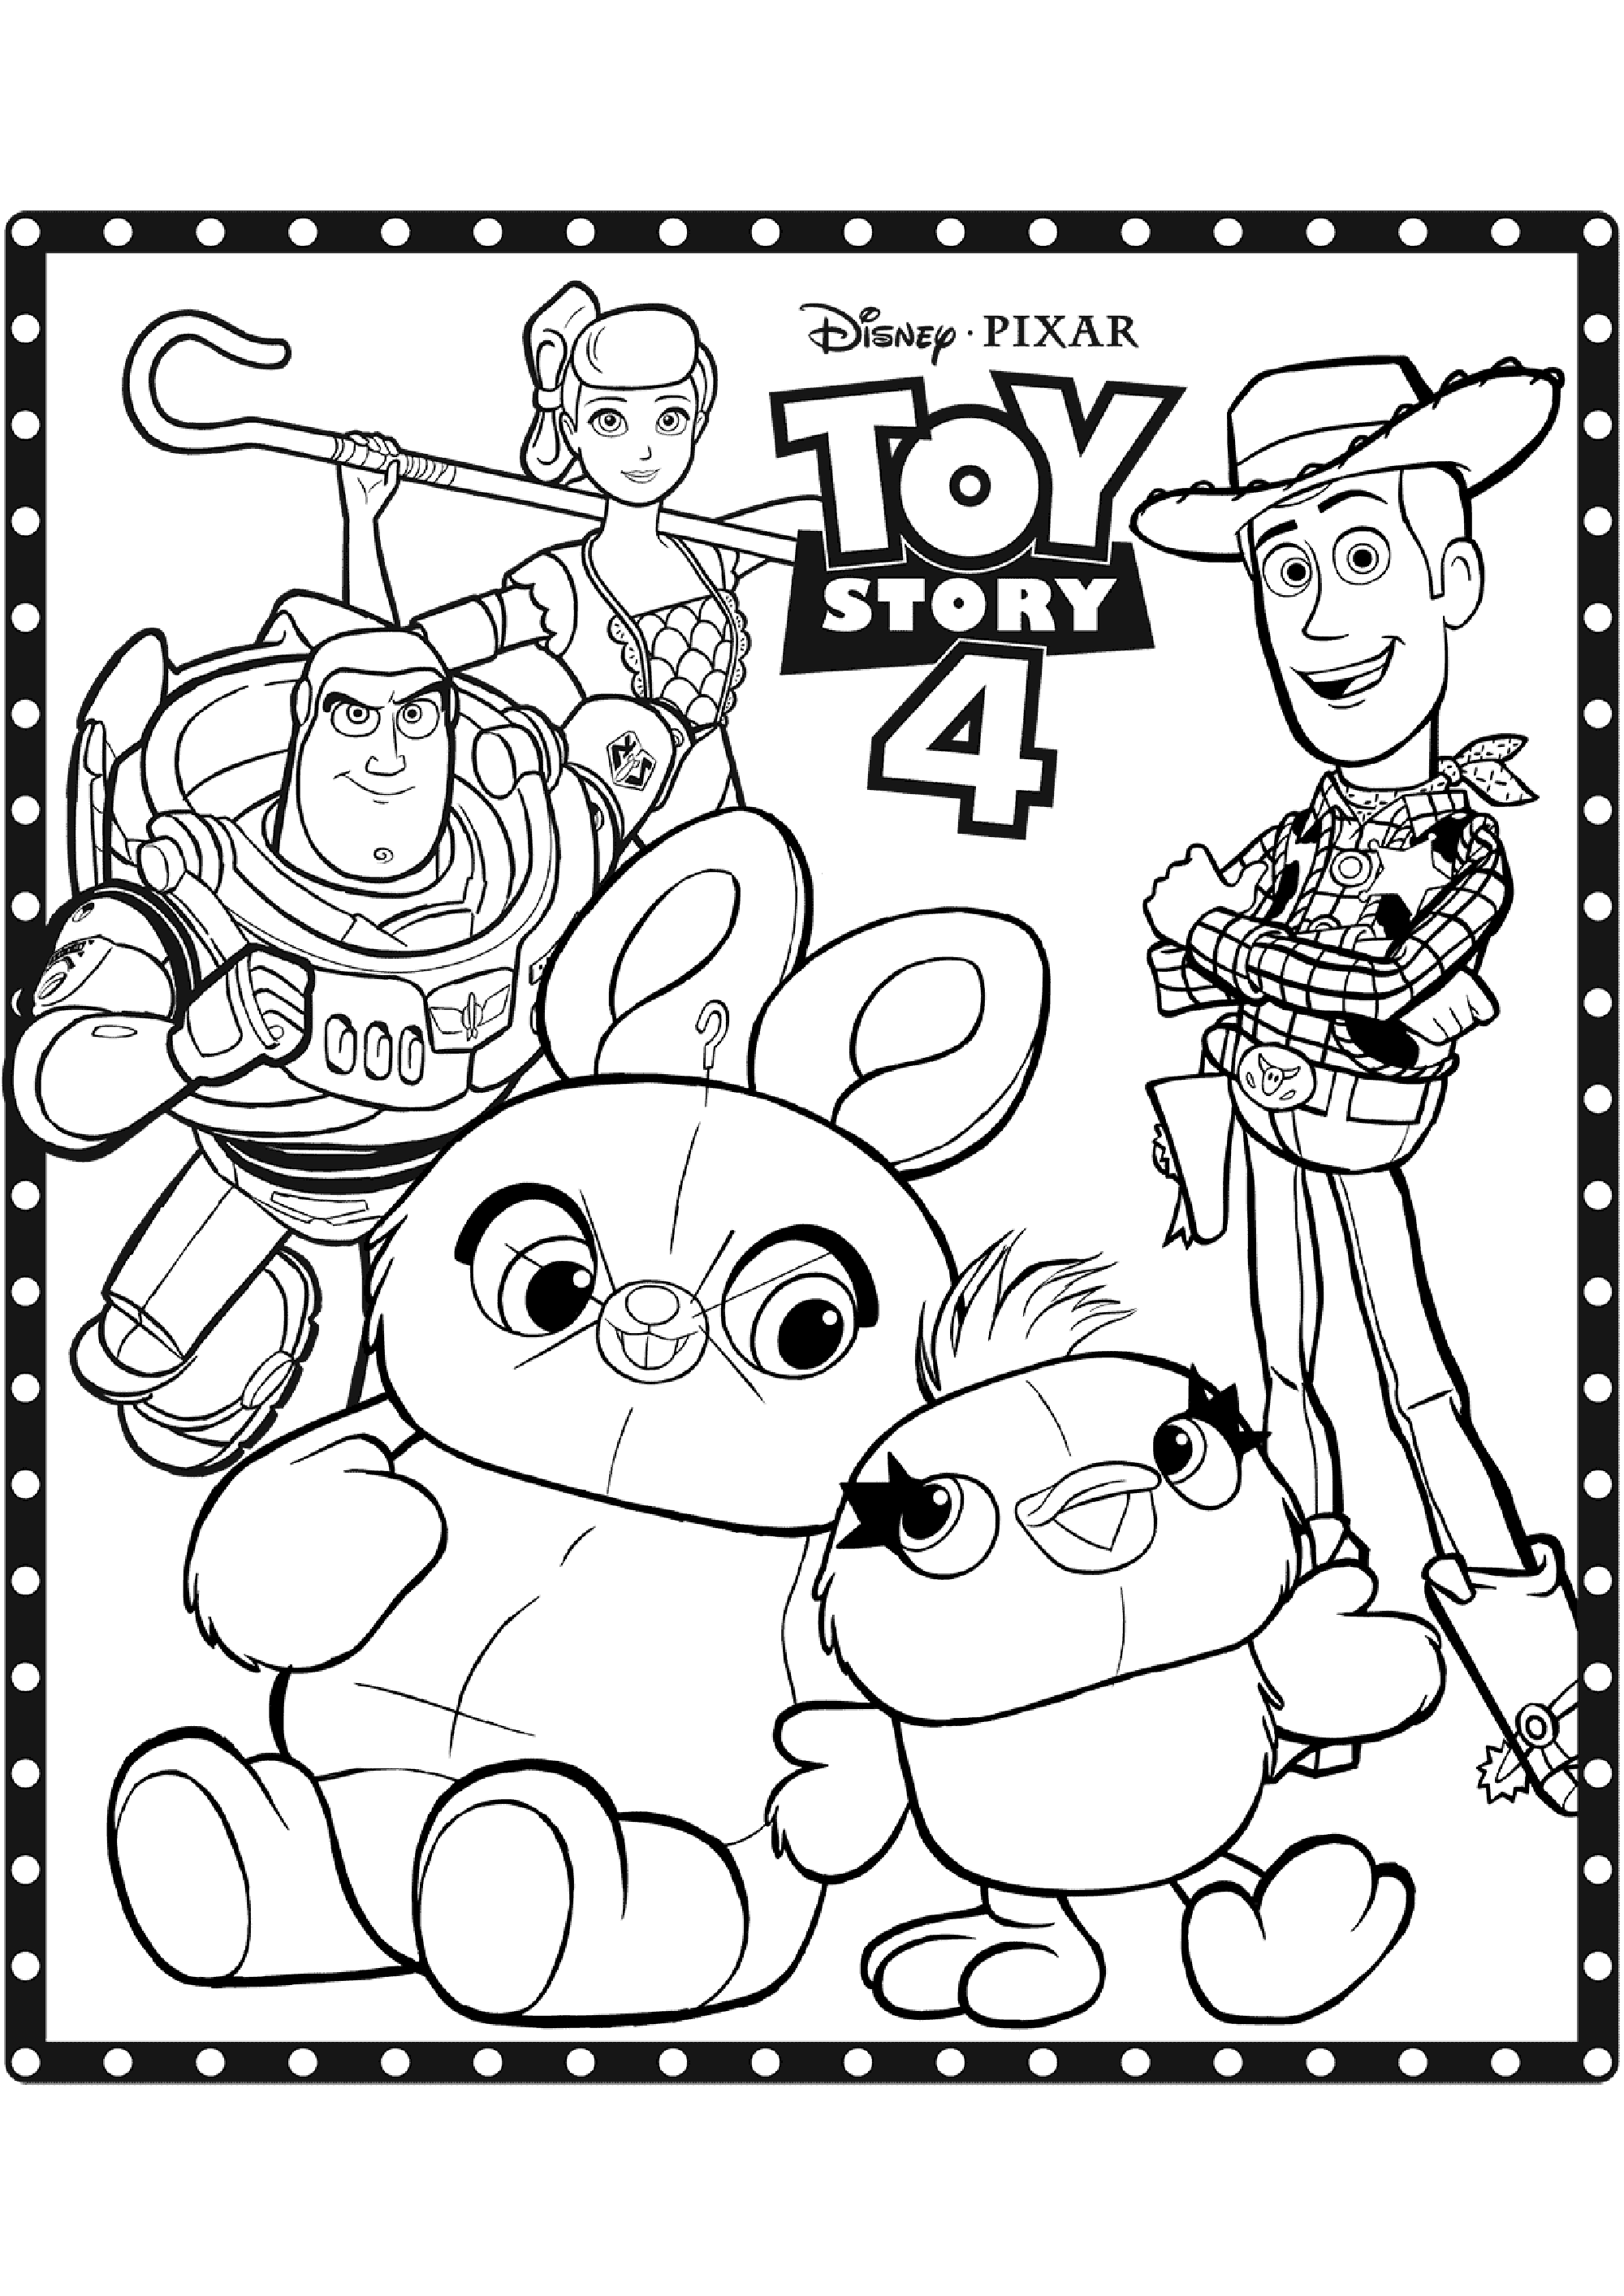 Dessin de Toy Story 4 à télécharger et imprimer pour enfants : Divers personnages